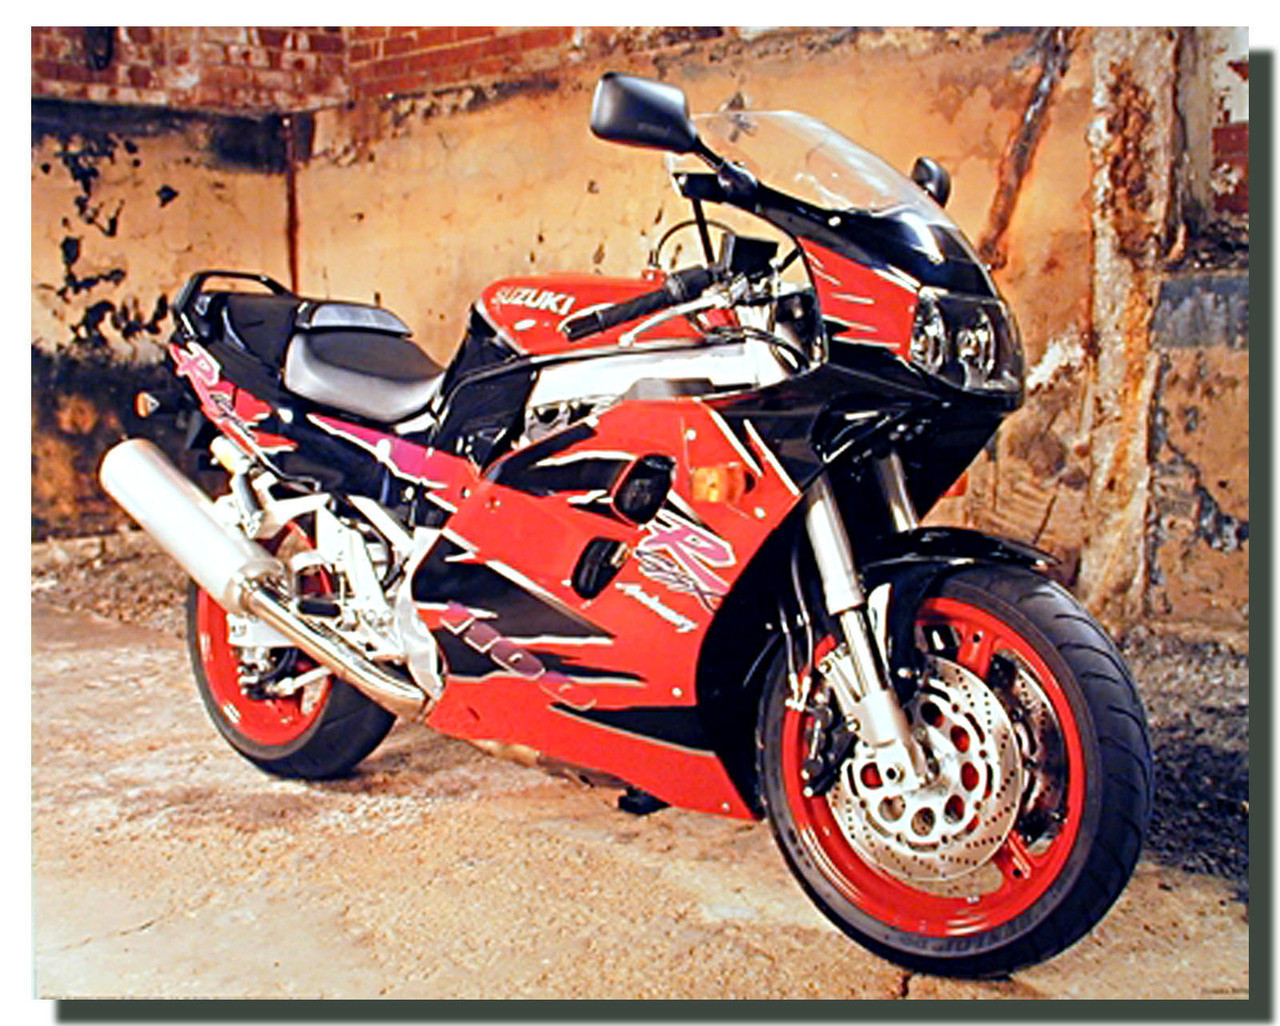 Suzuki_1100_GSX_Anniversary_Sports_Motorcycle_Posters__00858.1432803325.jpg